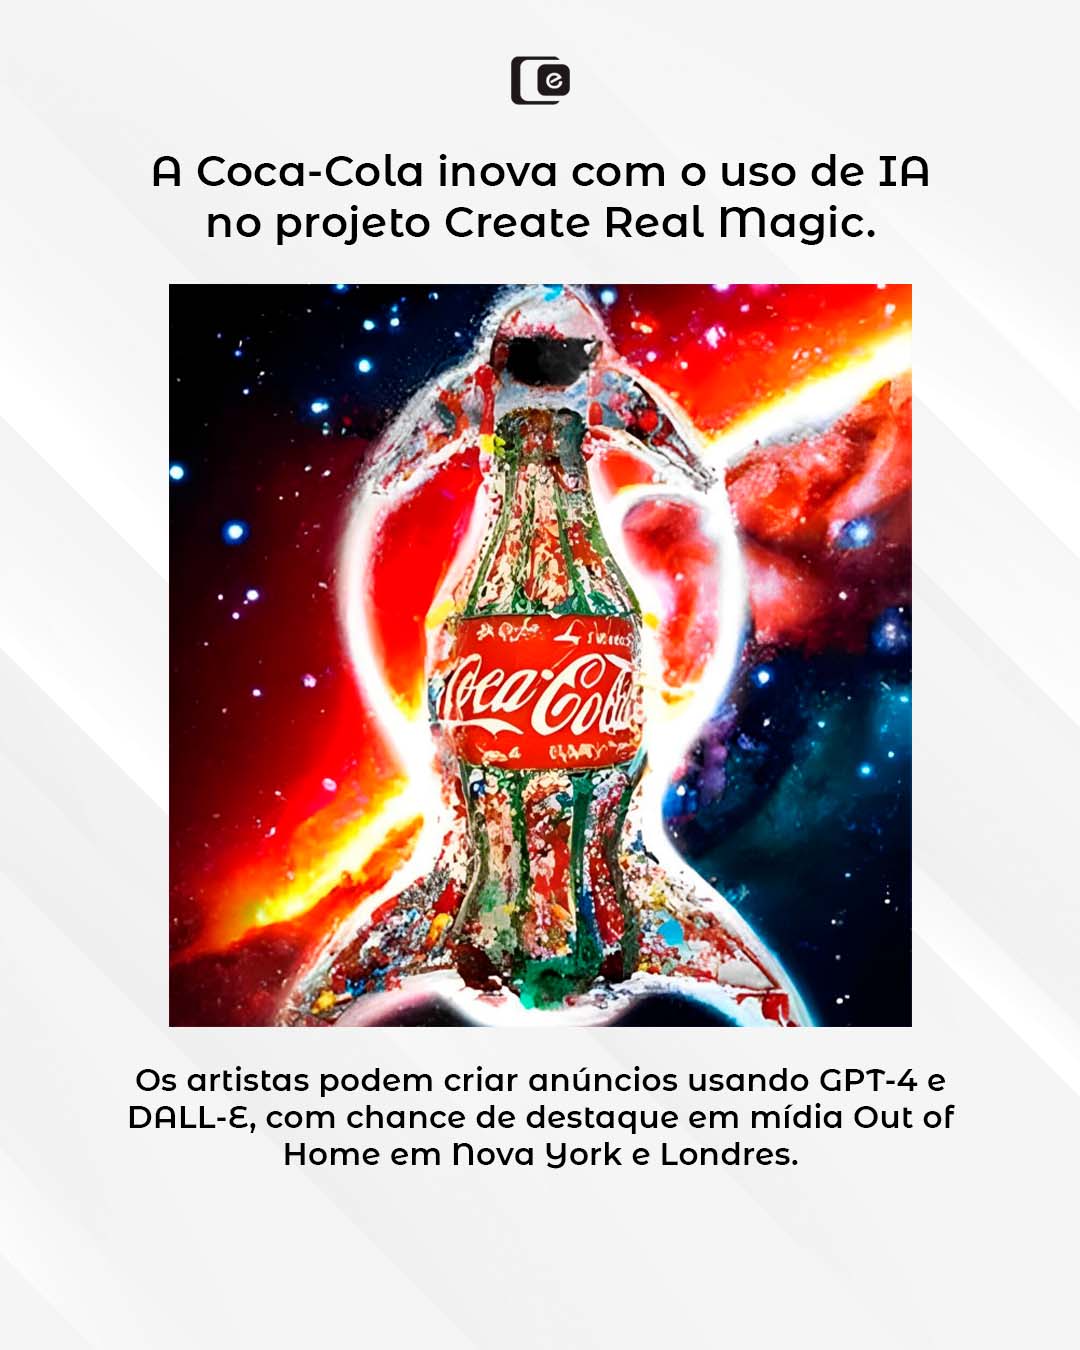 Coca-Cola transforma a publicidade com inteligência artificial